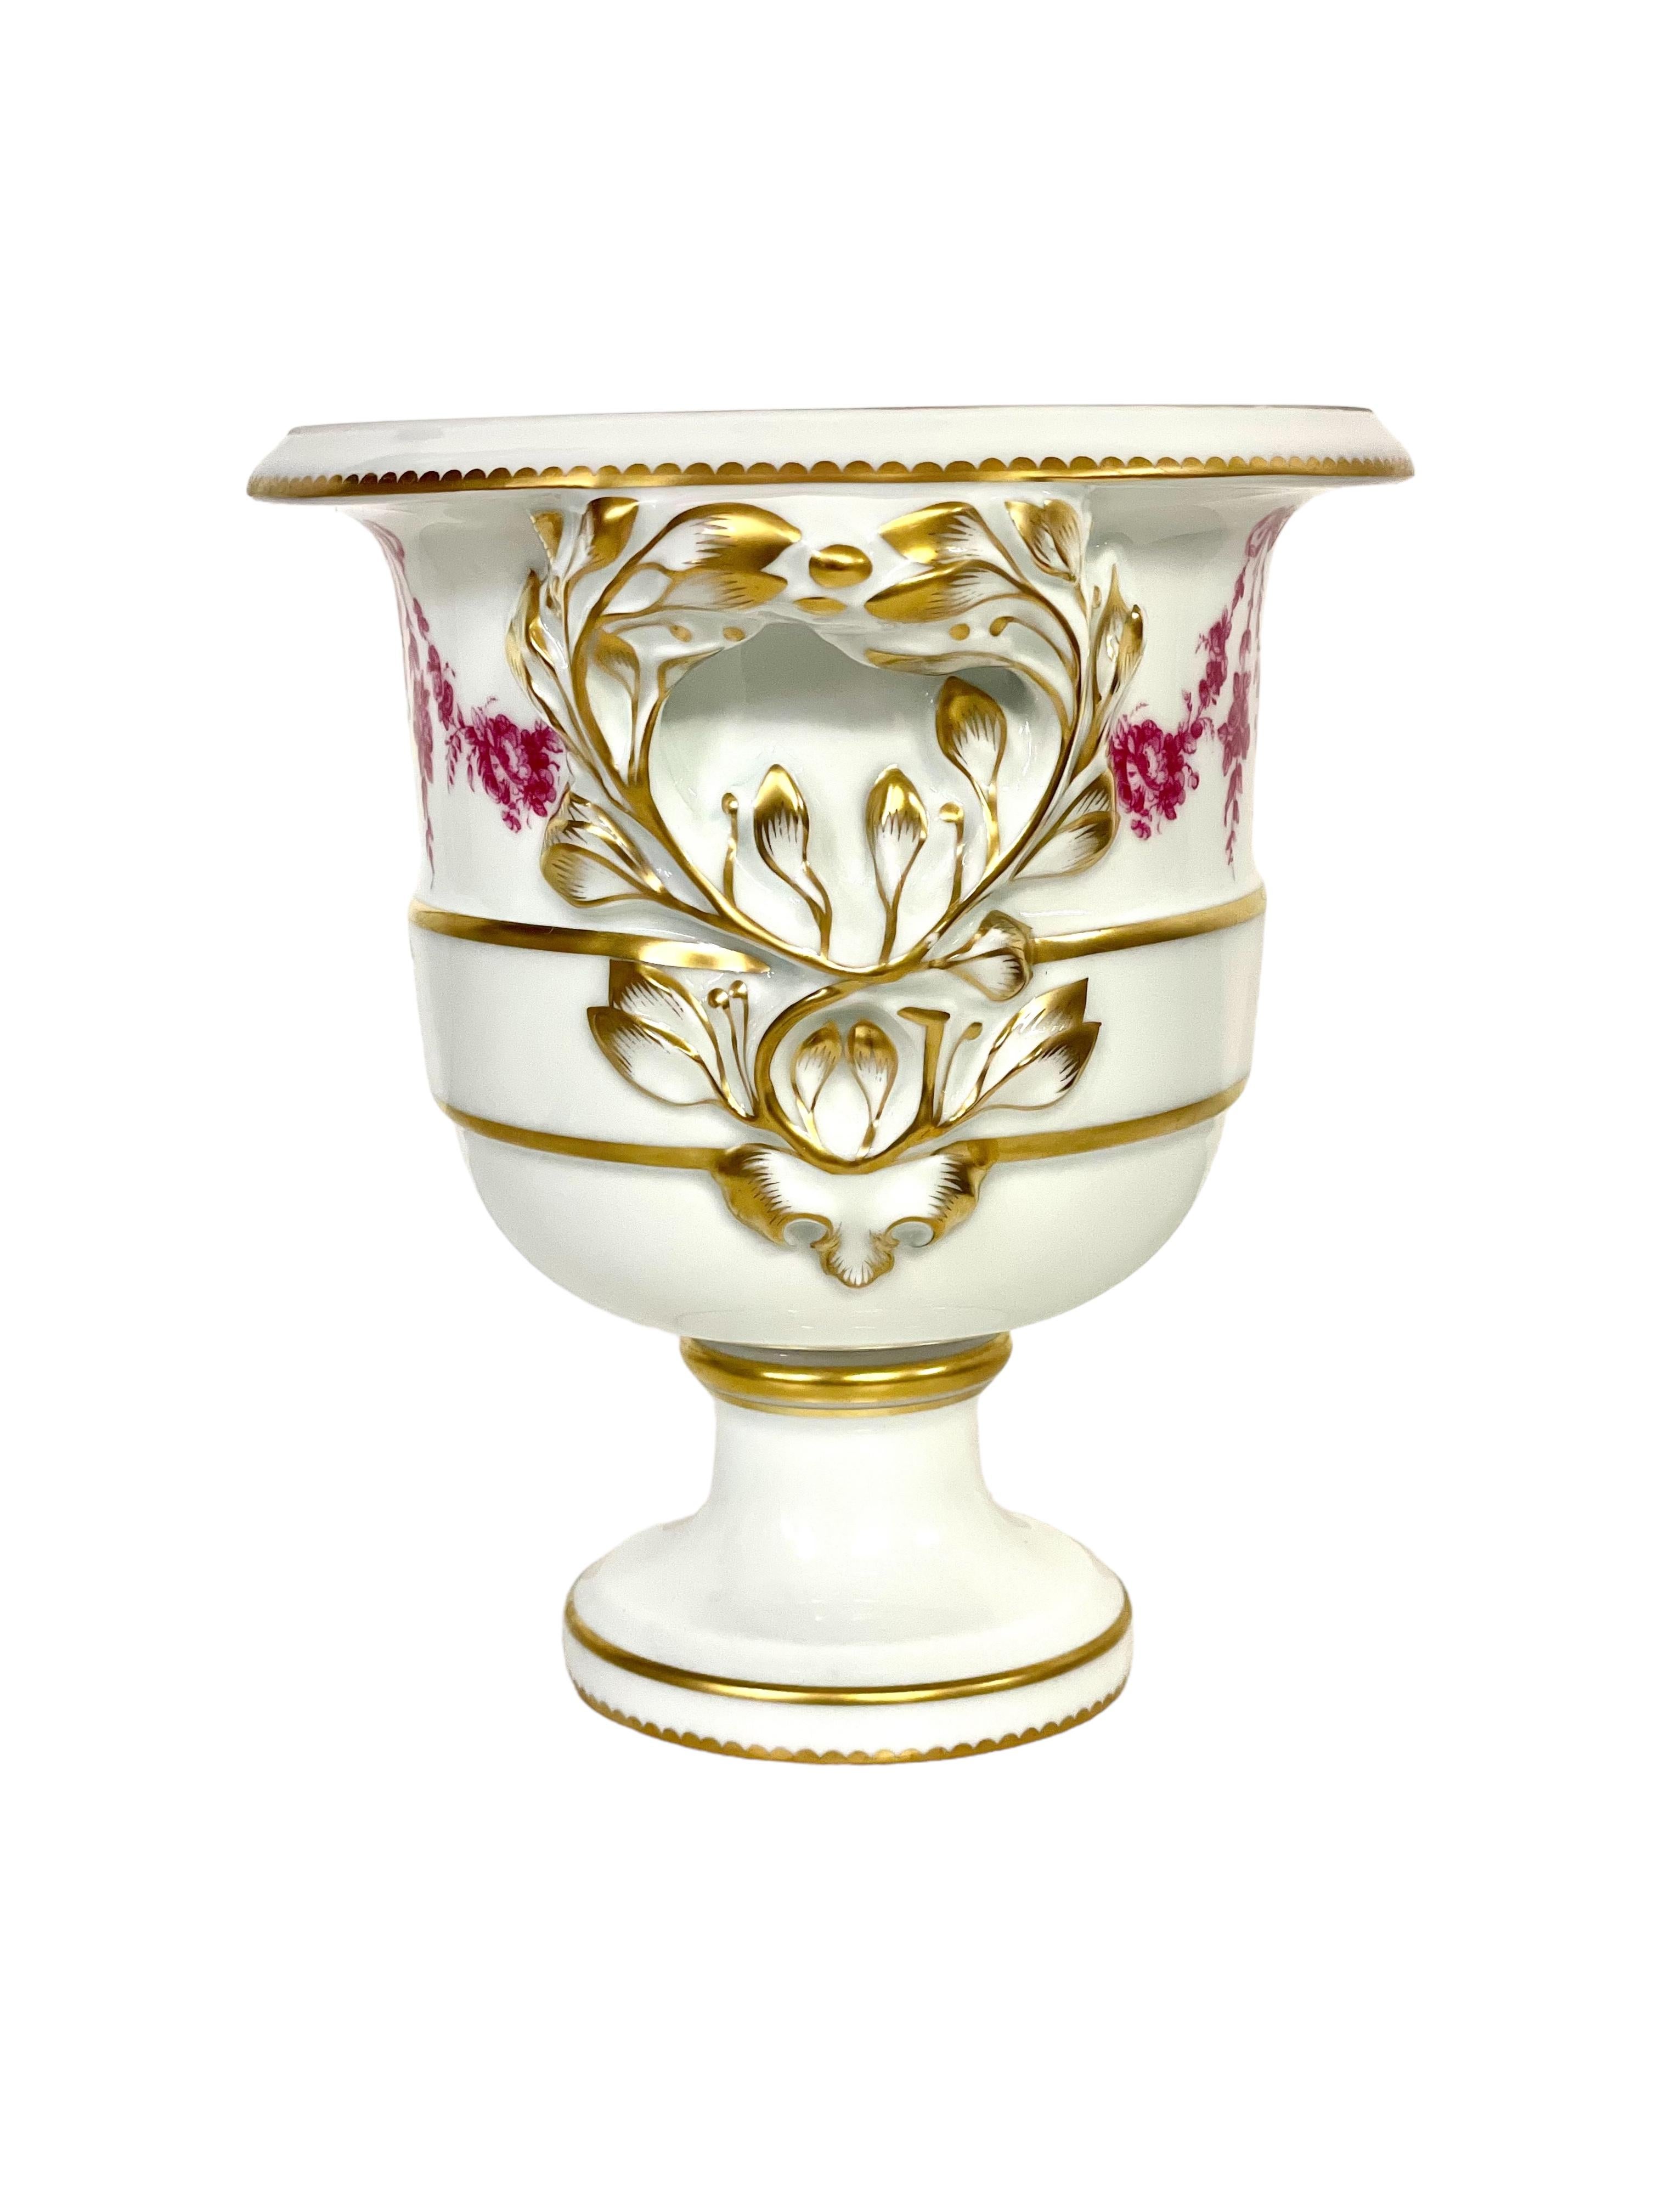 Sèvres Porcelain Vase from the 'Camaïeu Carmin' Service of Fontainebleau For Sale 2